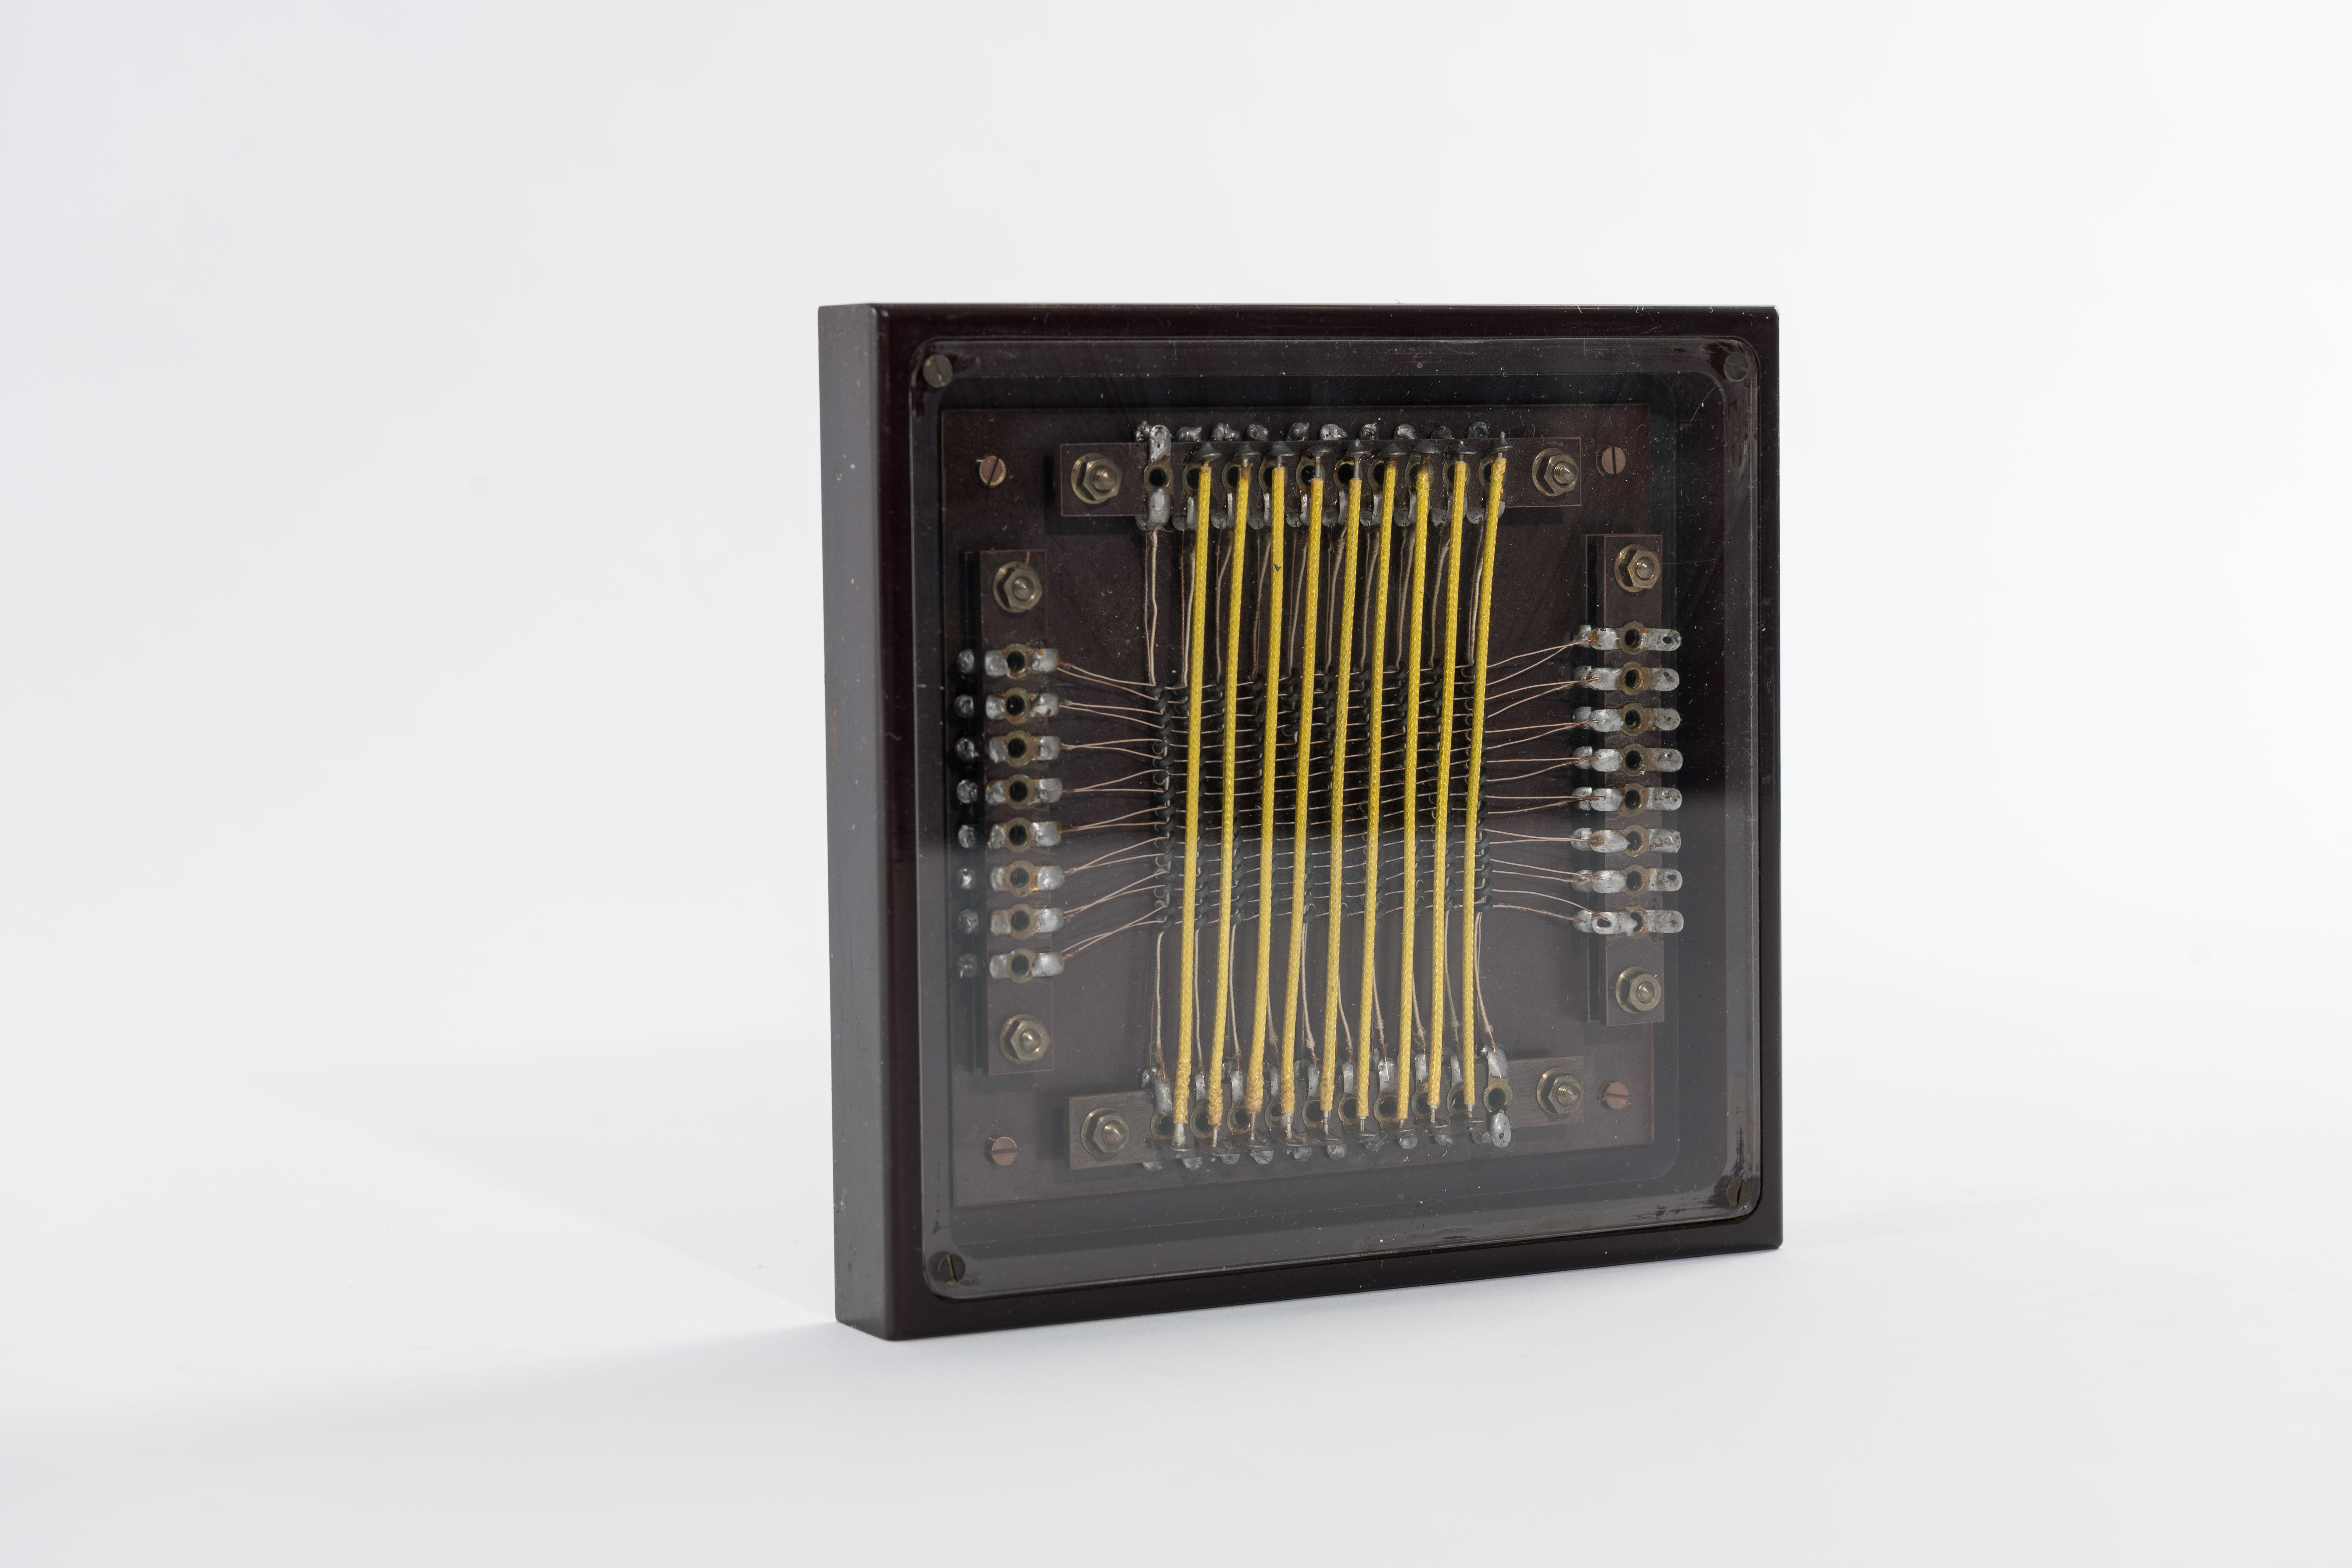 Ferritkernspeicher des G3-Elektronenrechners (Heinz Nixdorf MuseumsForum CC BY-NC-SA)